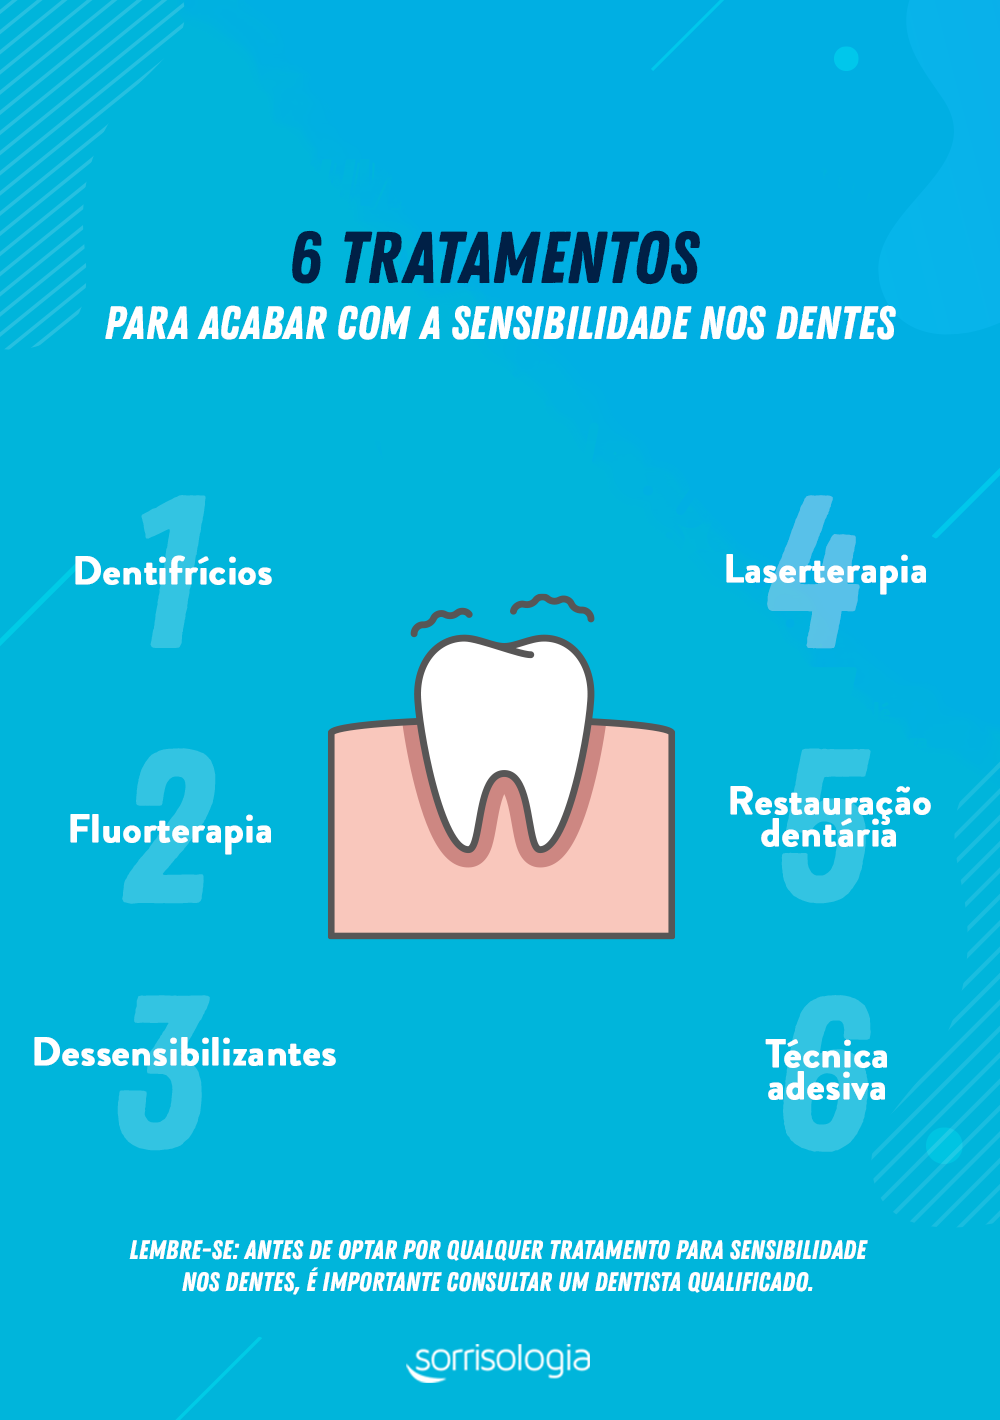 Conheça as principais opções de tratamento para sensibilidade nos dentes e como elas funcionam